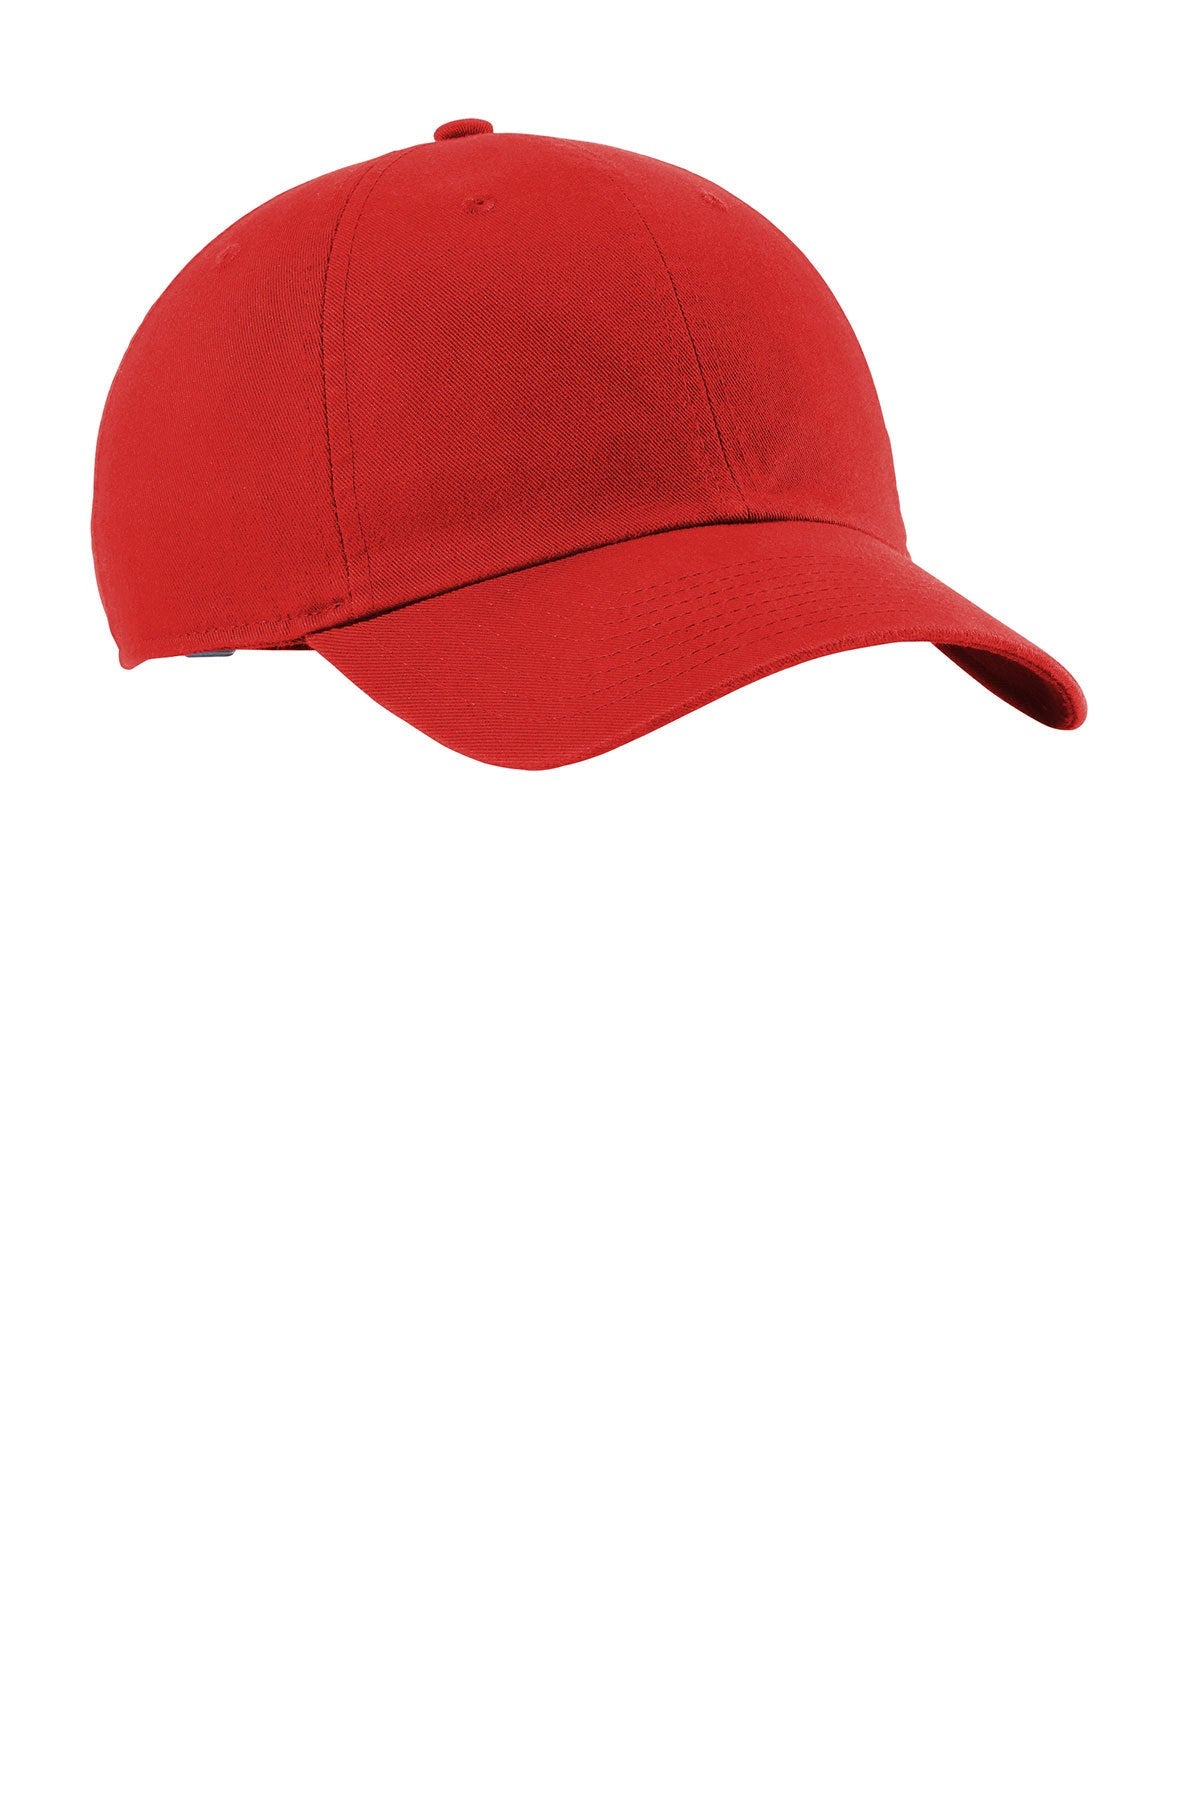 Nike Heritage 86 Customized Caps, University Red